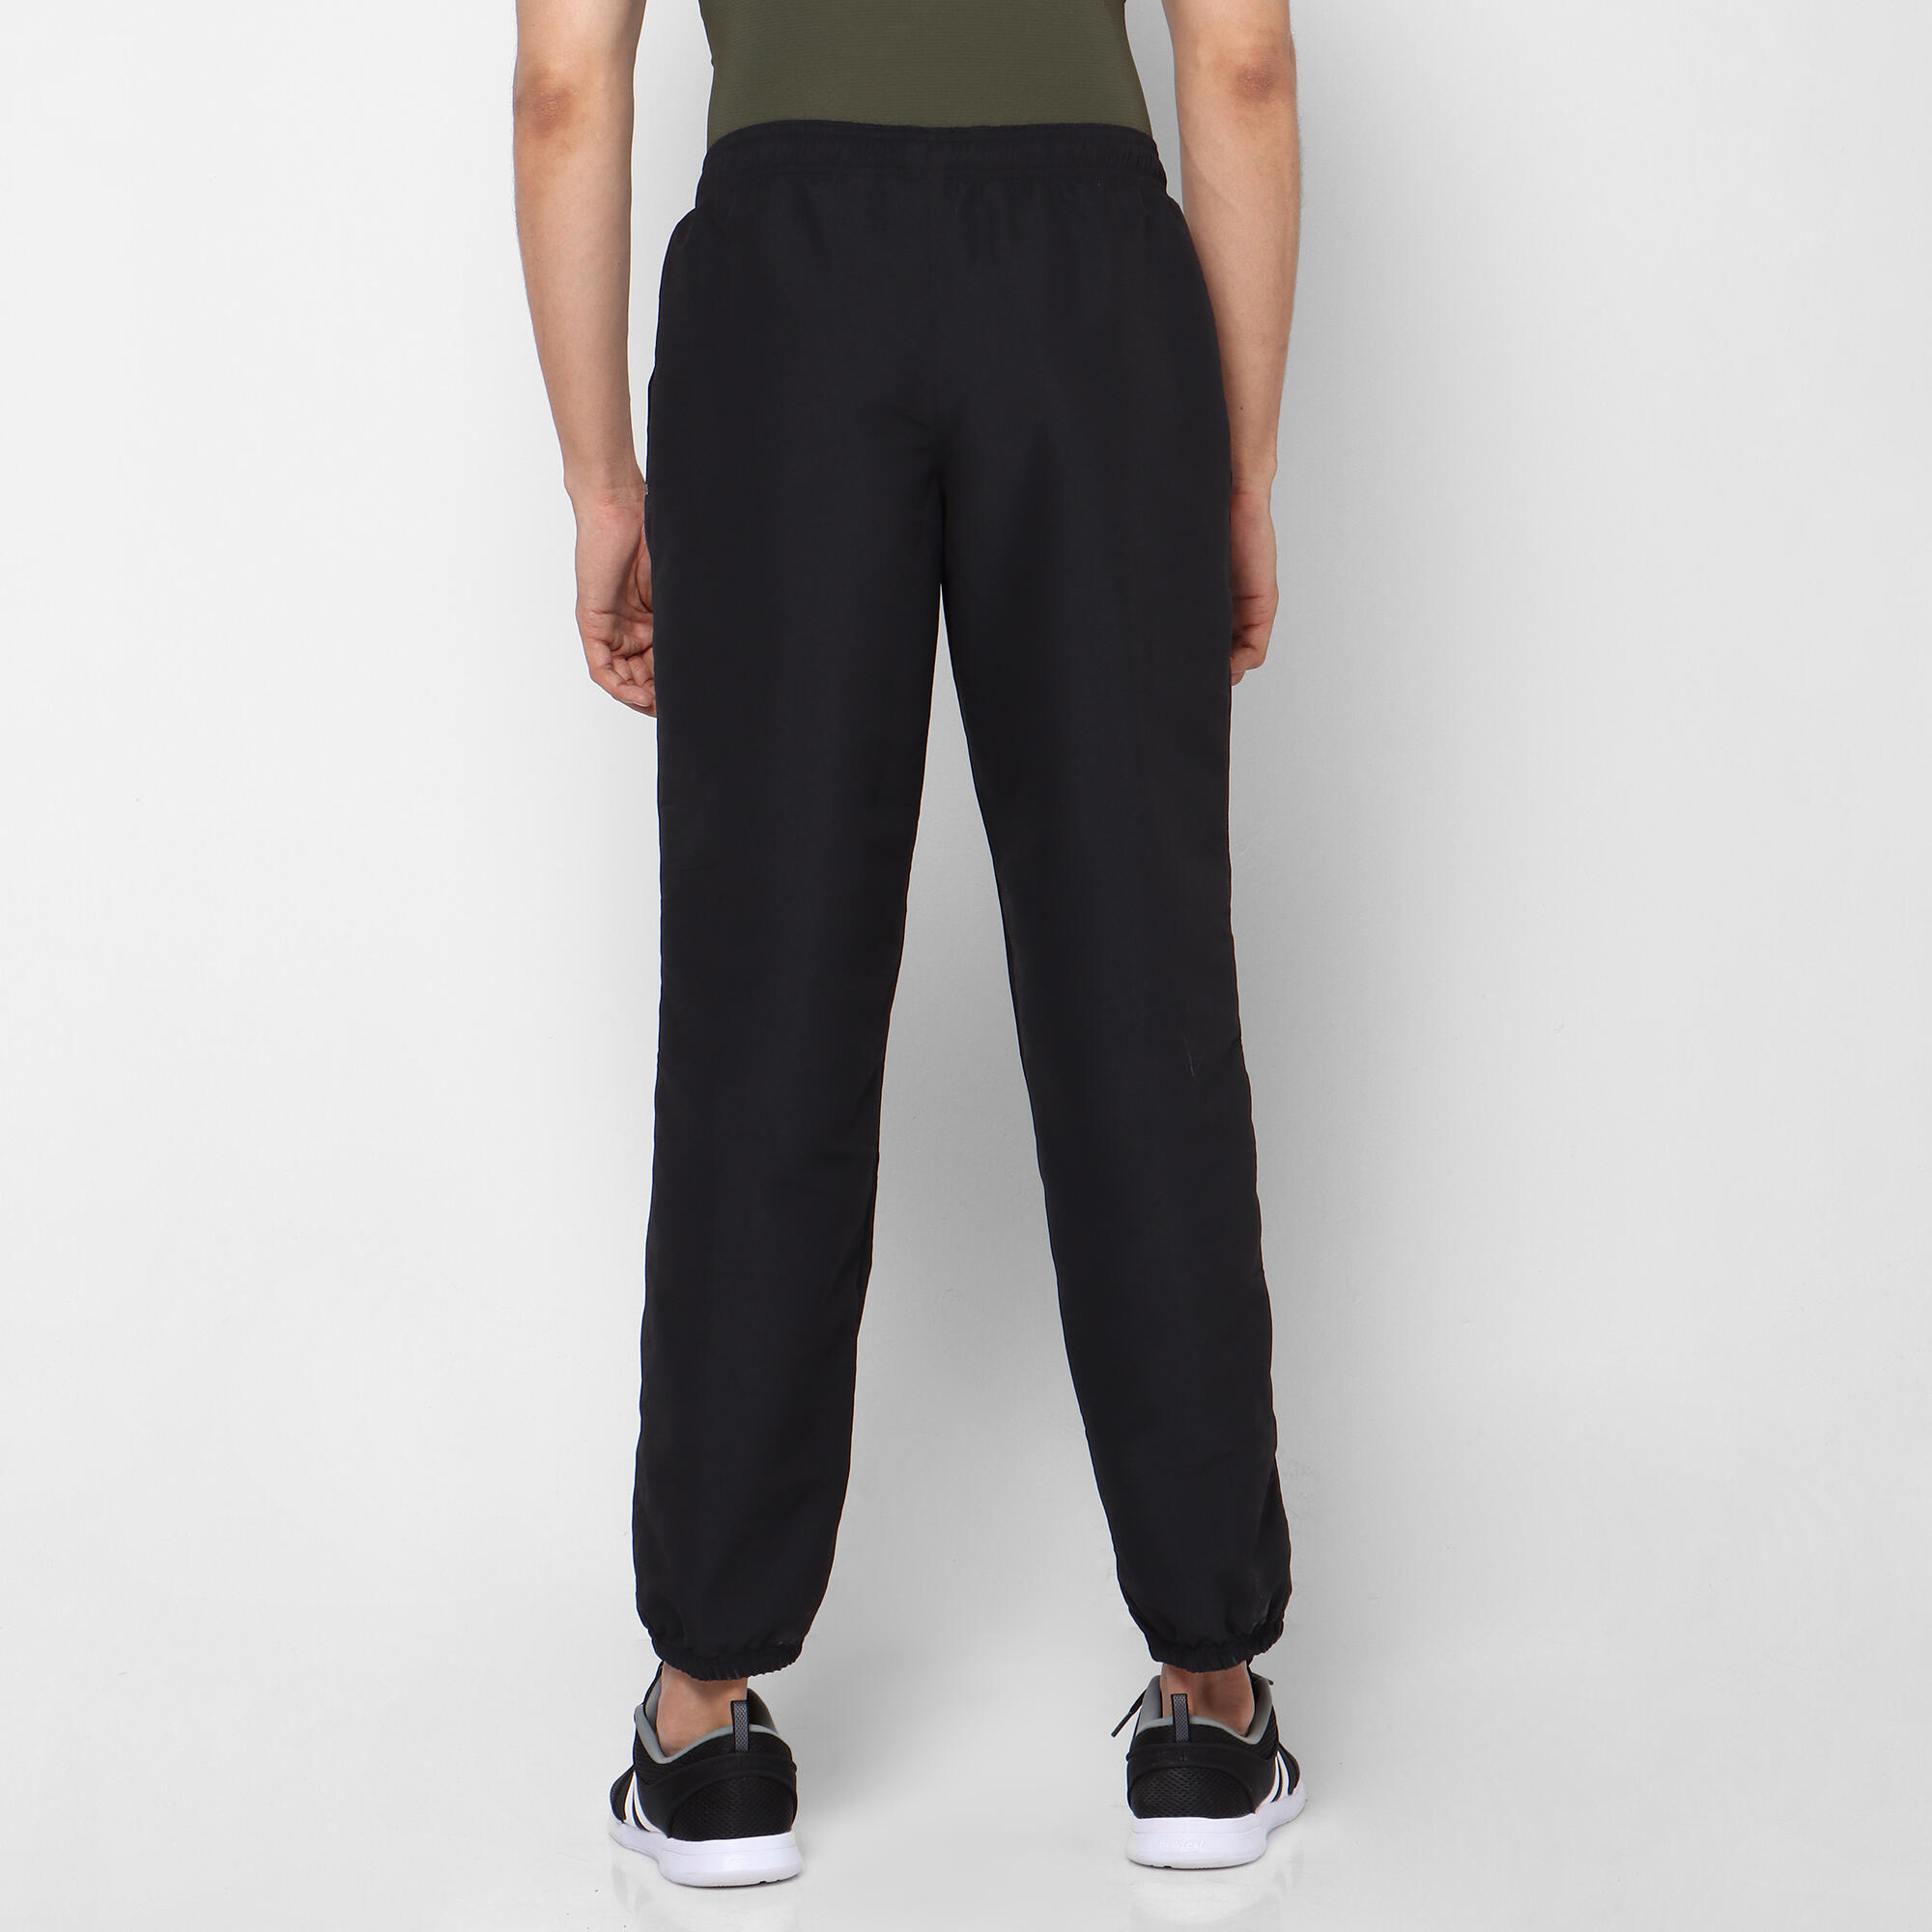 Black Cotton Stretchable Pants | Candy-6231-Black | Cilory.com